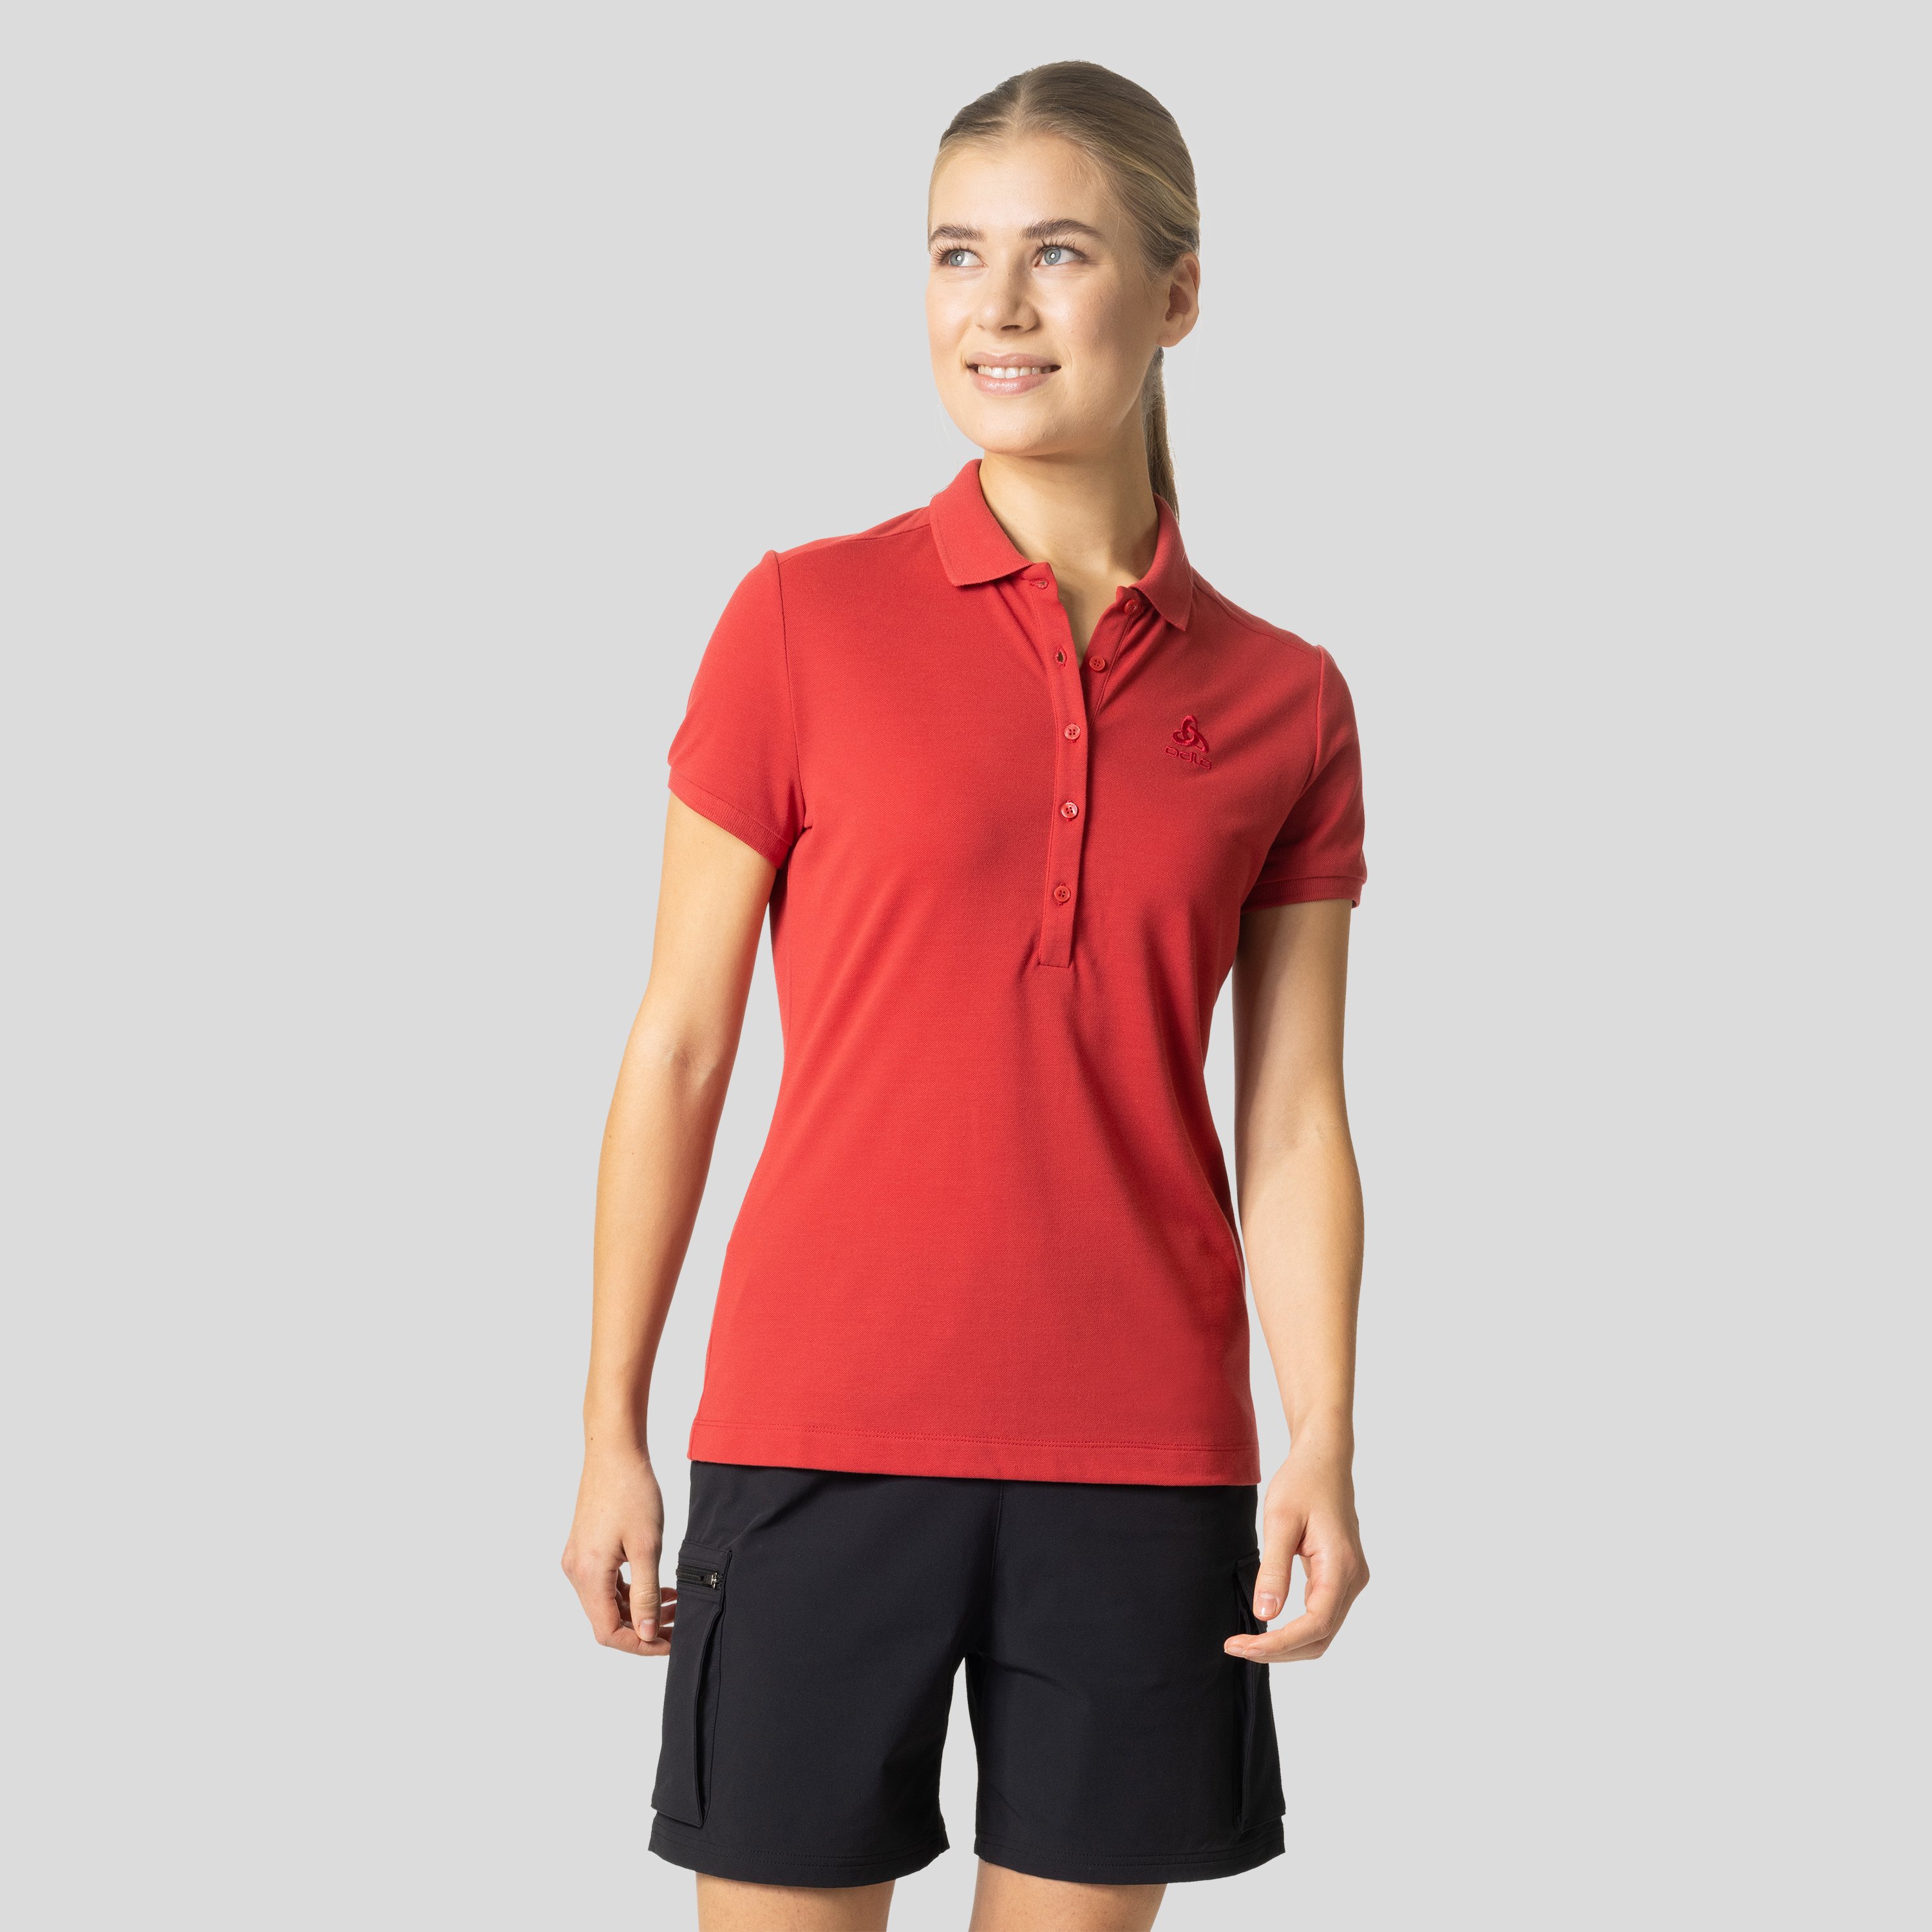 ODLO Concord Poloshirt für Damen, M, rot